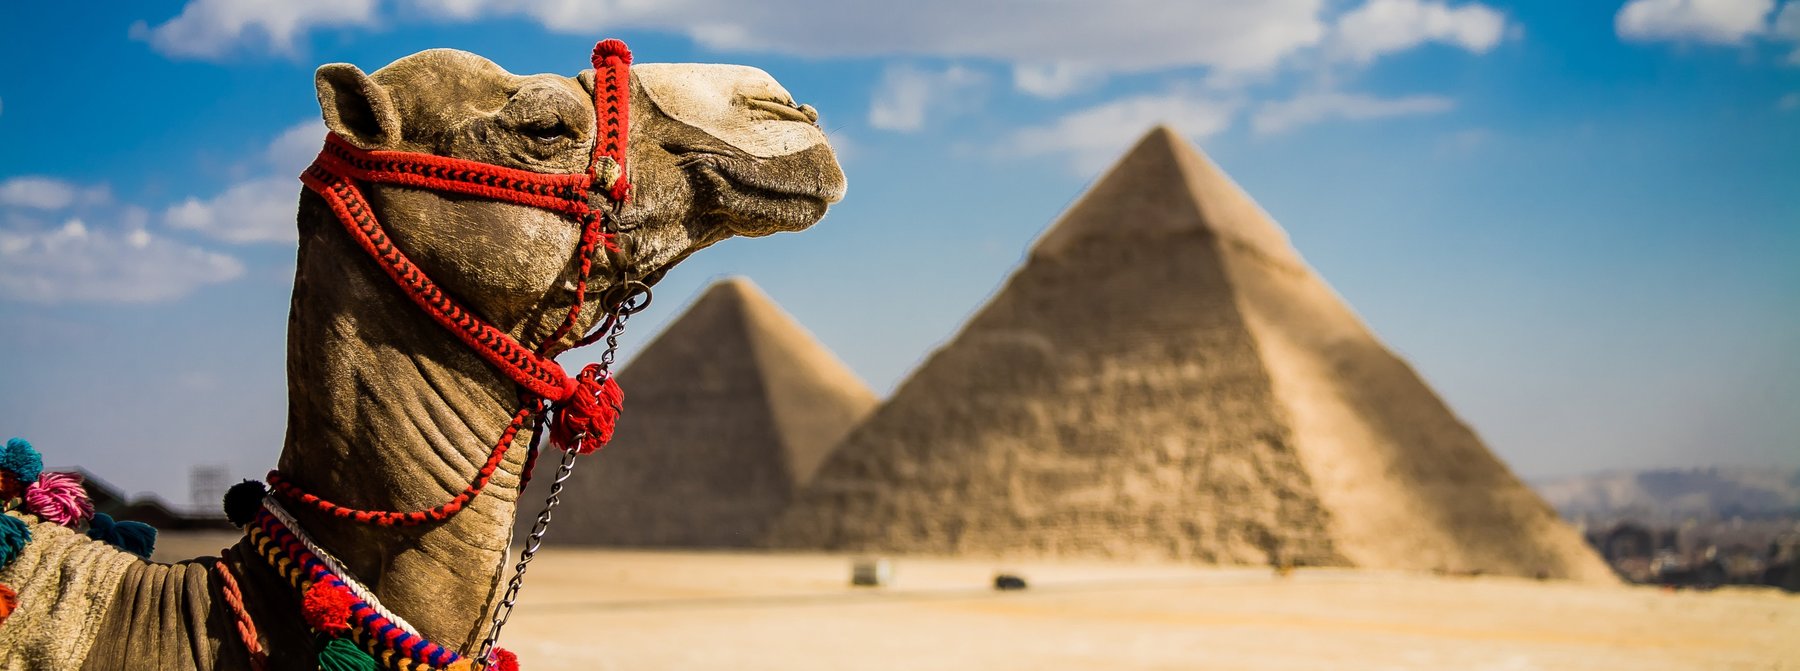 Kamel vor den Pyramiden von Gizeh in Ägypten